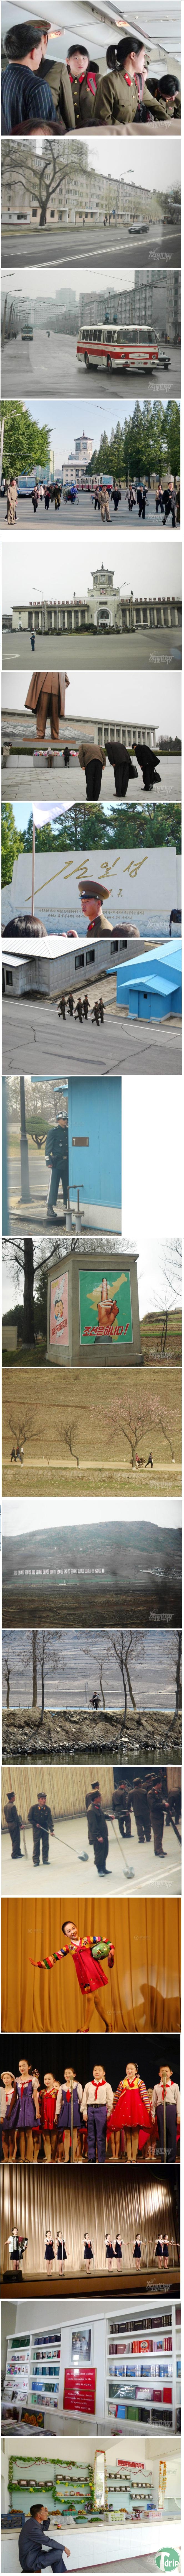 1.jpg : 중국인이 찍은 북한 풍경.jpg